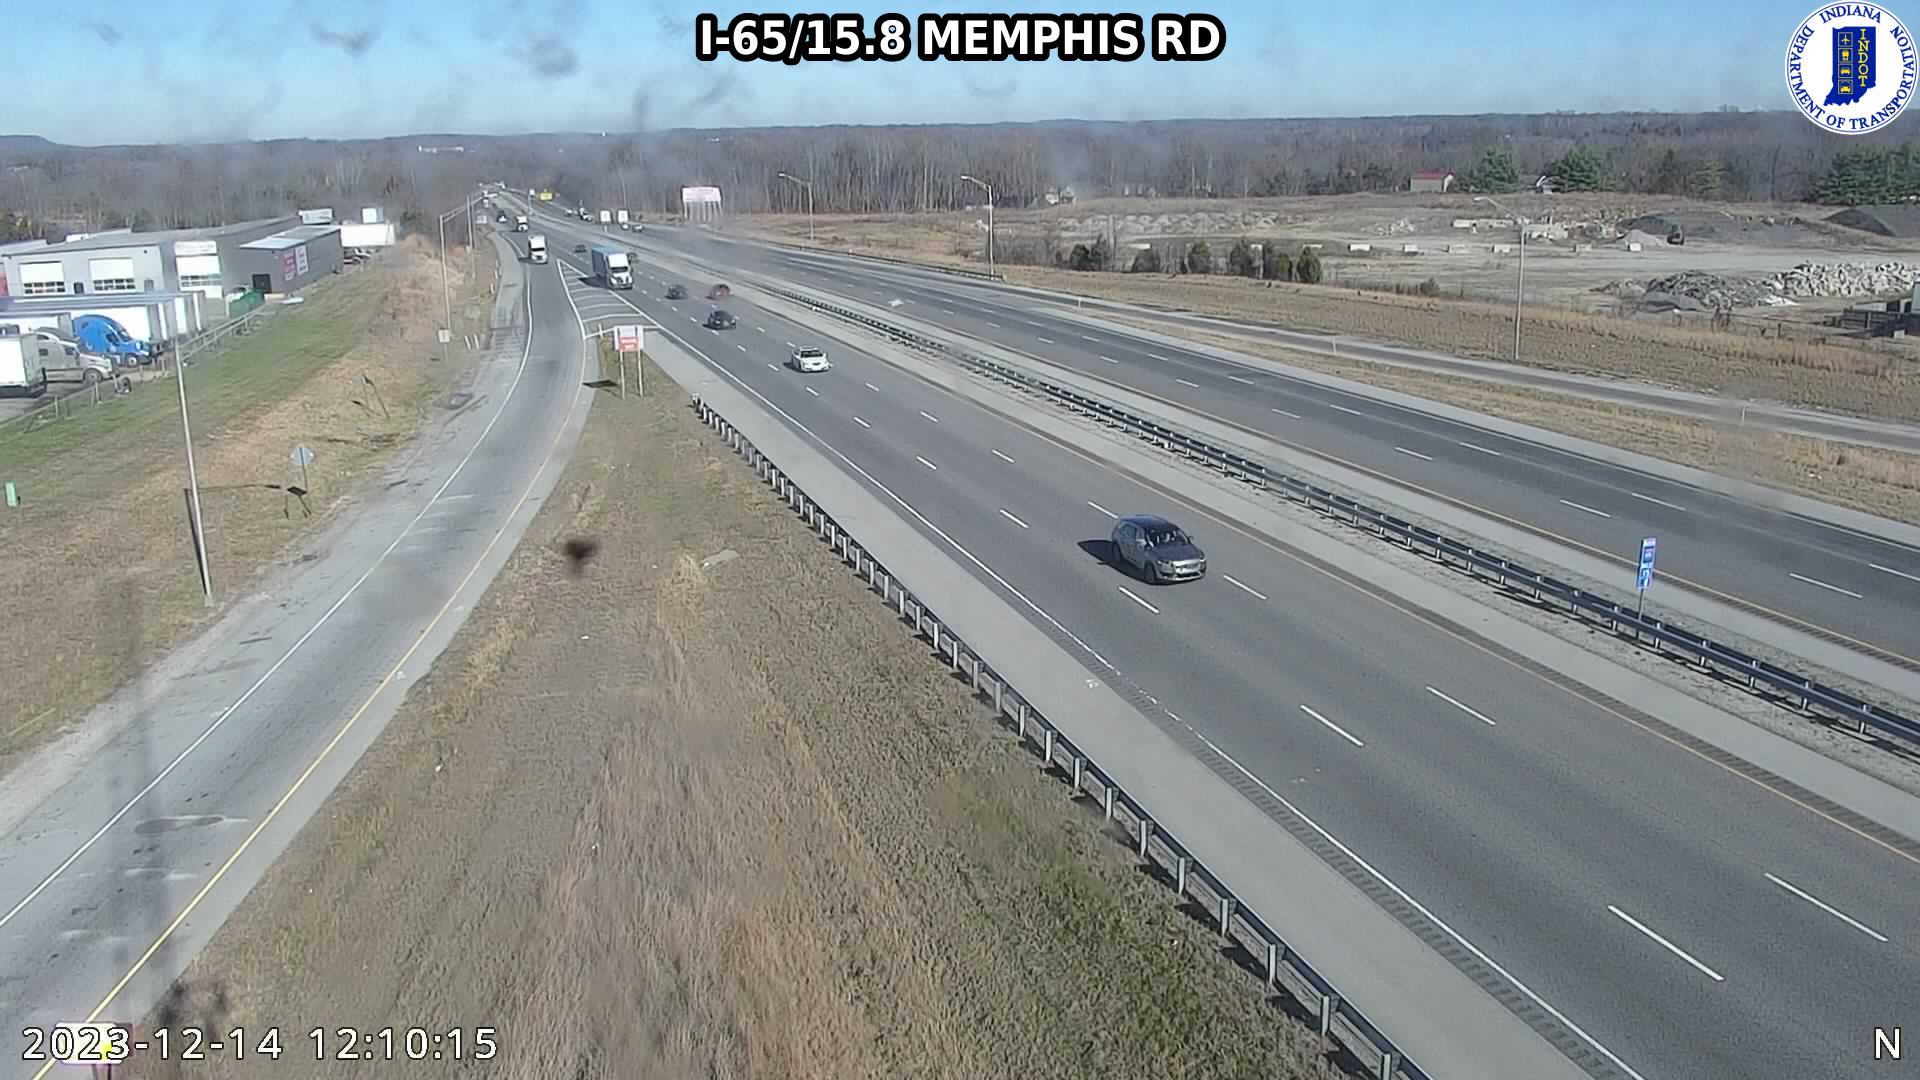 Traffic Cam Memphis: I-65: I-65/15.8 - RD : I-65/15.8 - RD Player